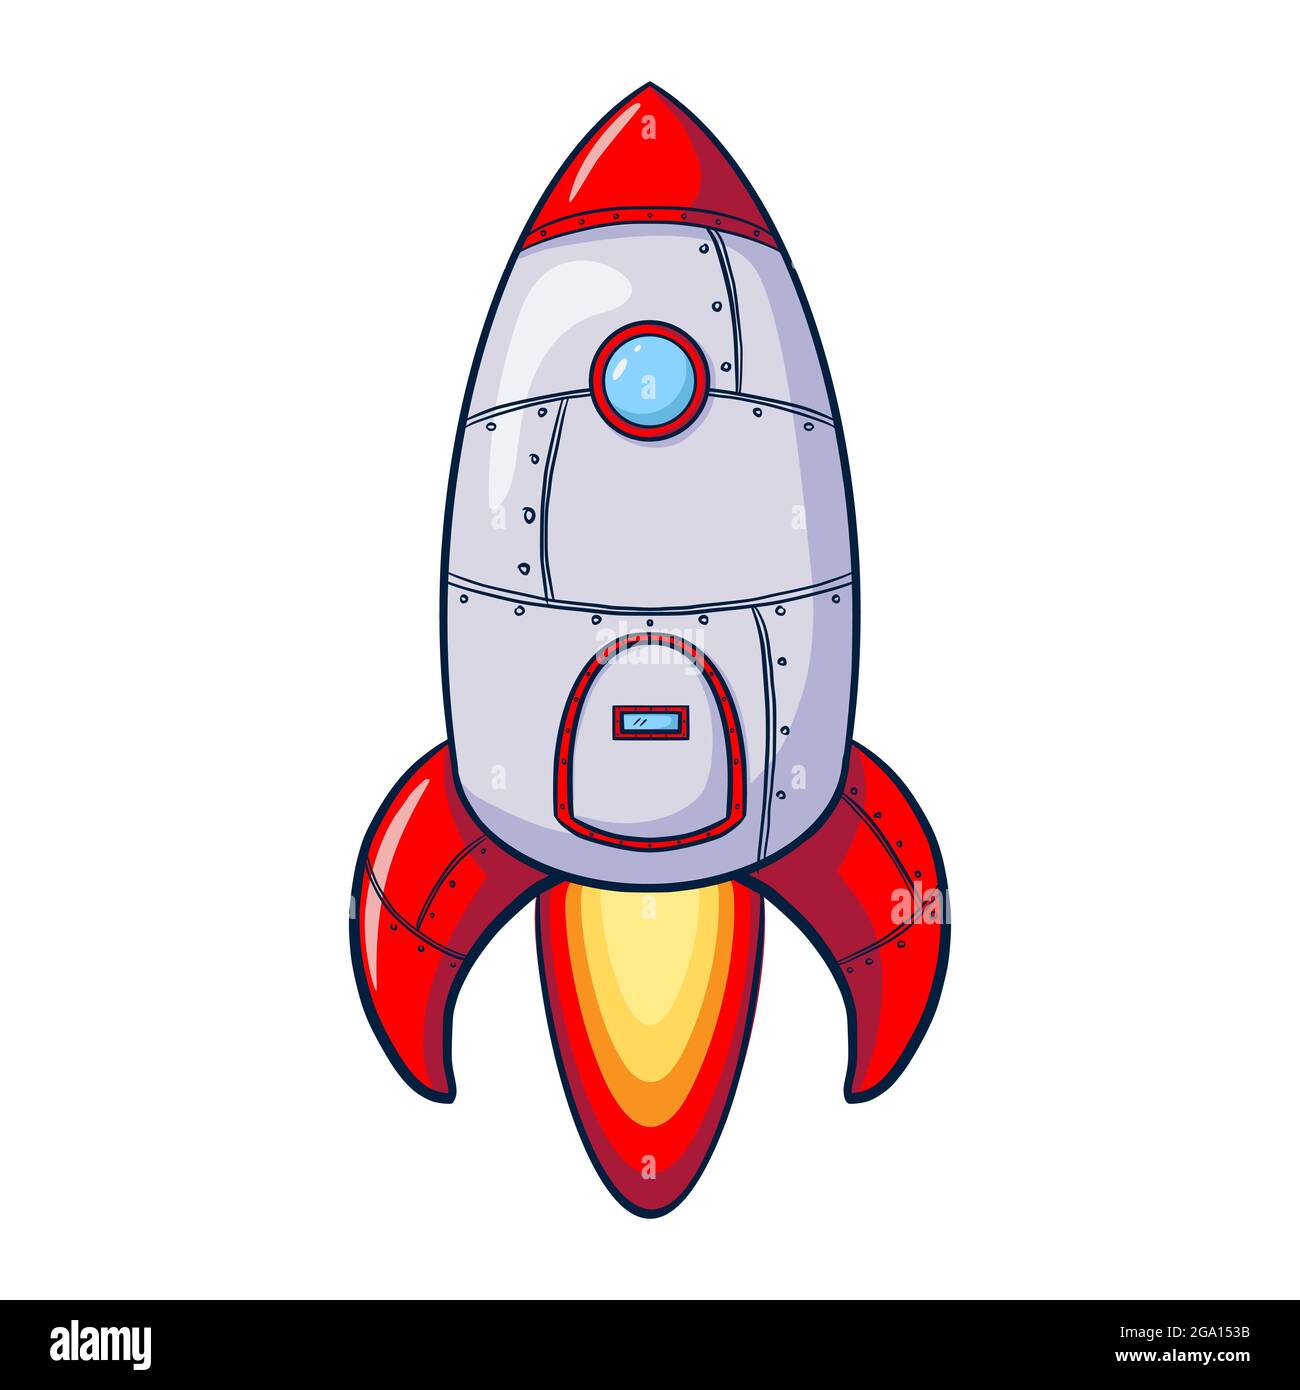 Ilustración de la nave espacial de dibujos animados. Icono de cohete  dibujado a mano. Concepto de boceto de lanzamiento de nave espacial de  producto empresarial, adecuado para página de inicio web, banner,